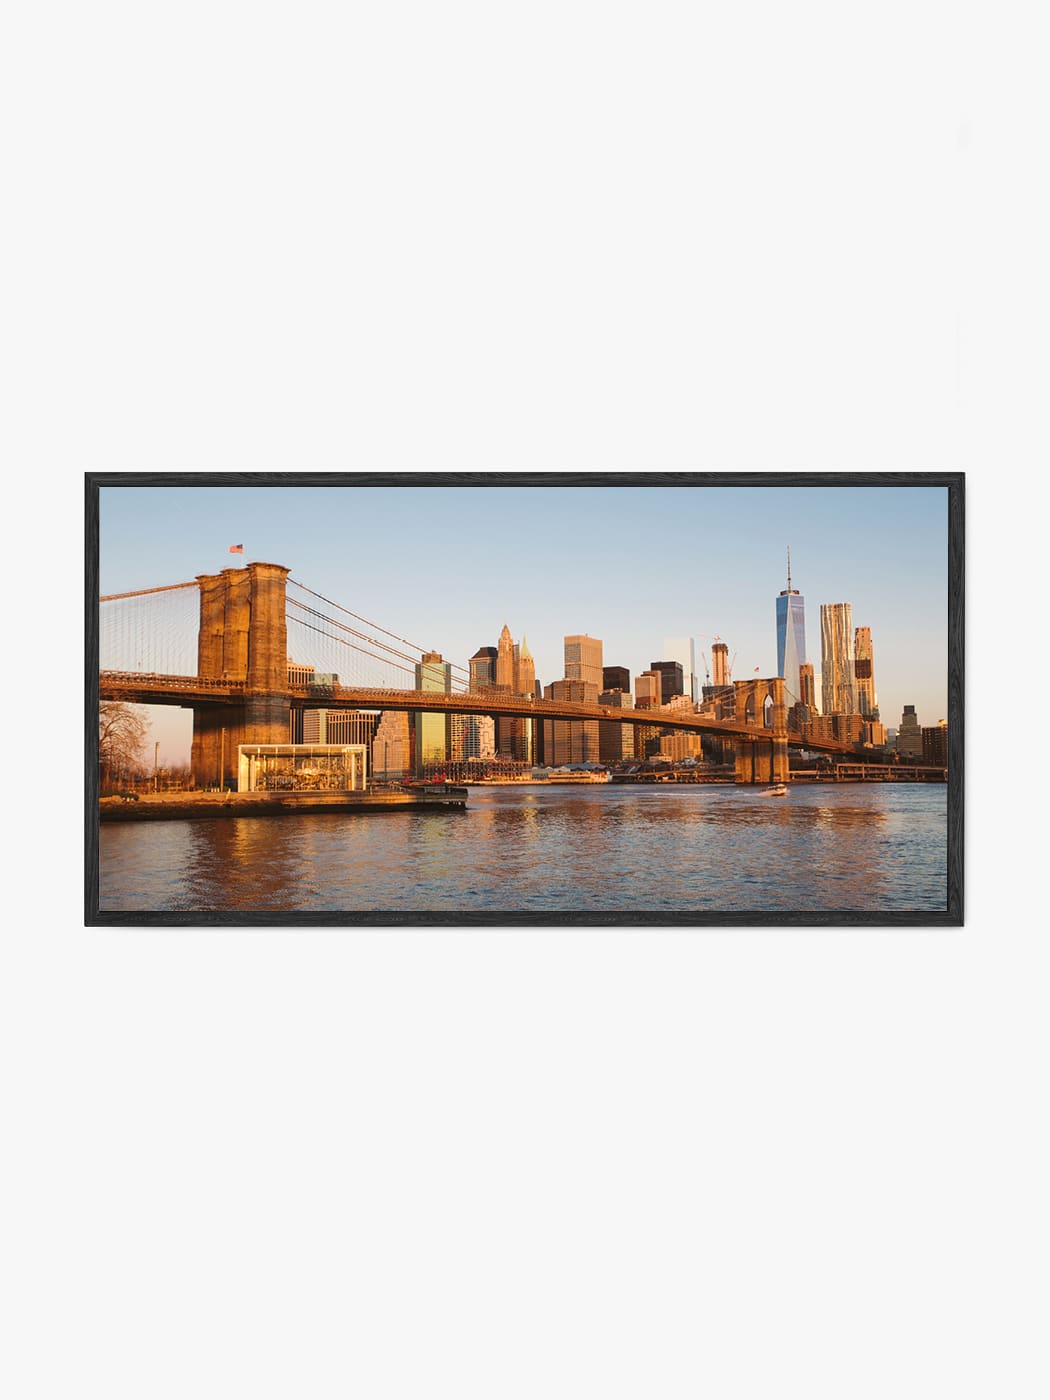 Obraz akustyczny ze zdjęcia - Most Brooklyński w Nowym Jorku - Łukasz Popielarczyk